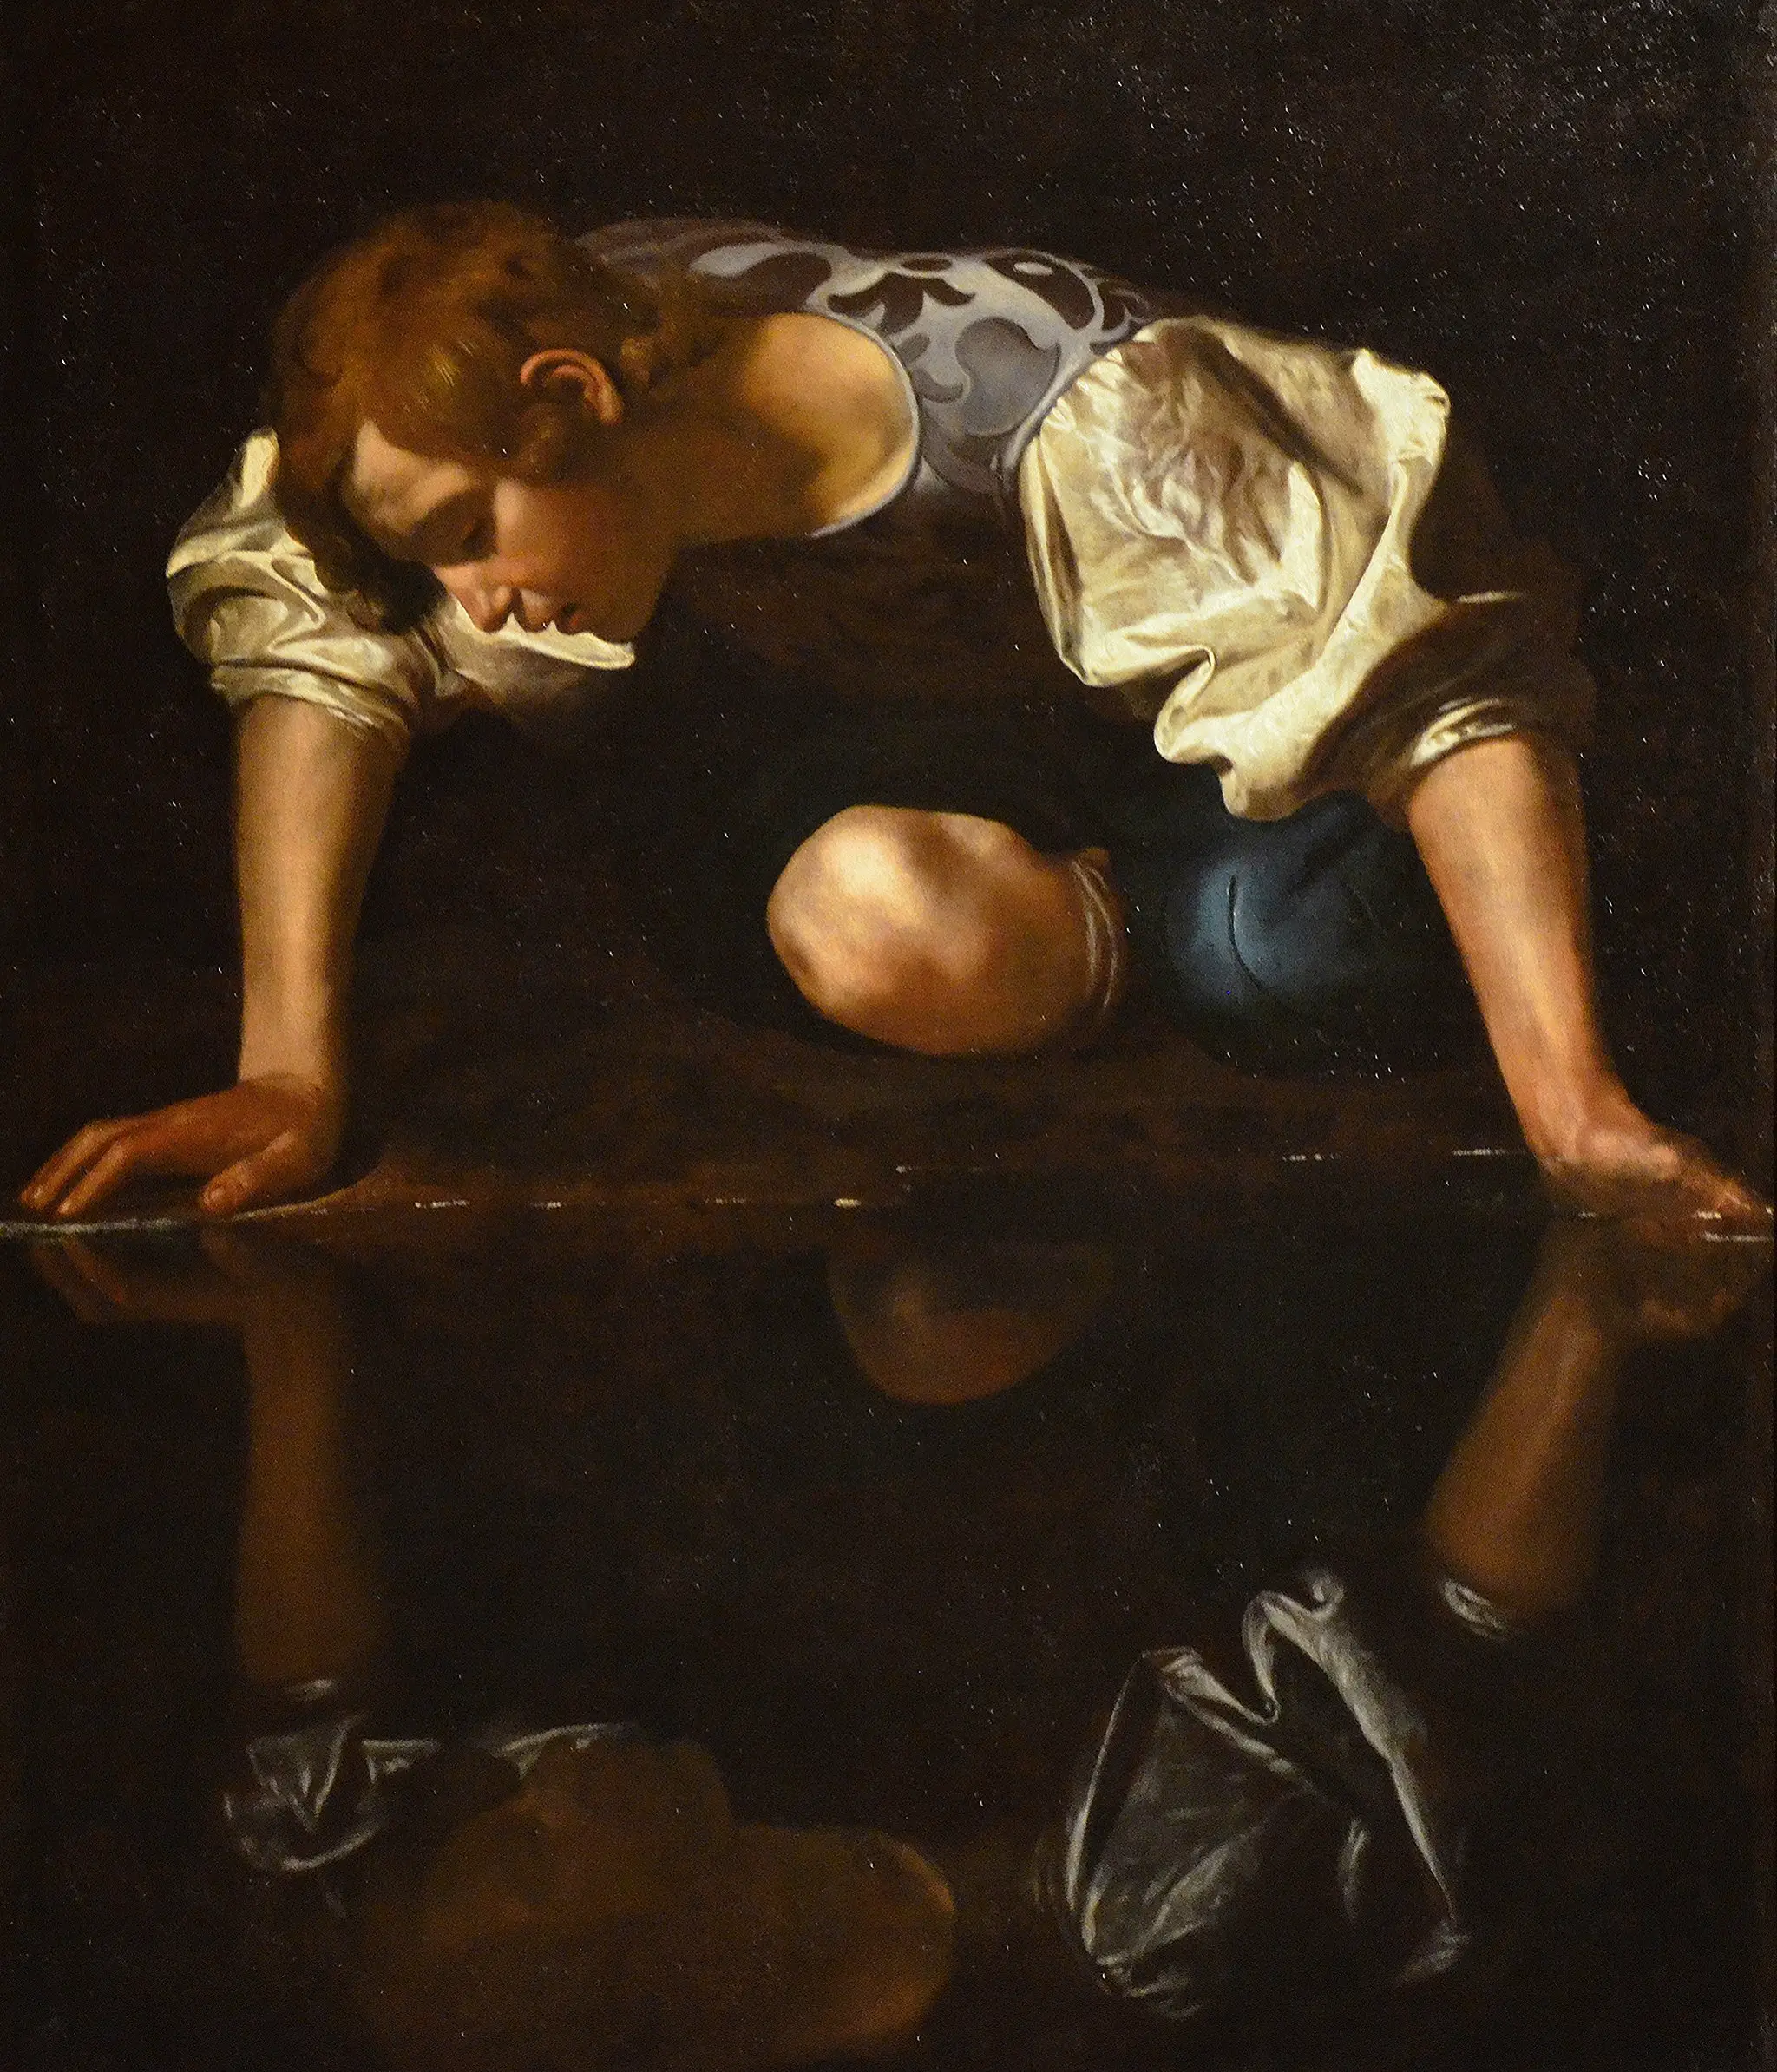 El mito griego de Narciso, el joven que se enamoró de su propio reflejo en el agua